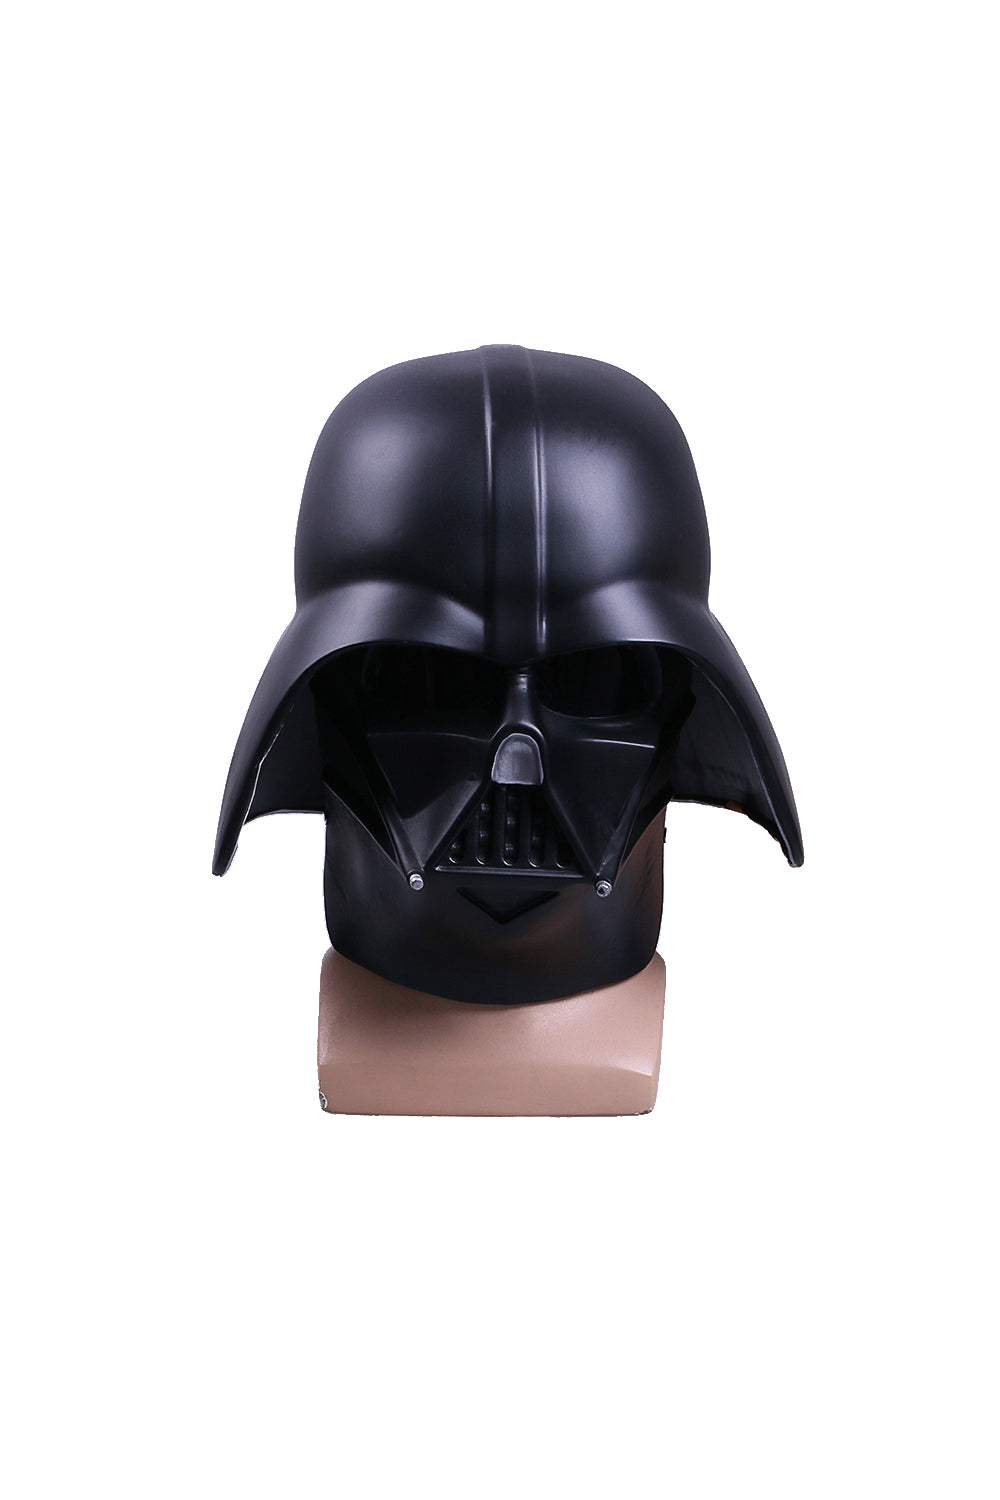 Darth Vader Cosplay Helm Cosplay Requisite